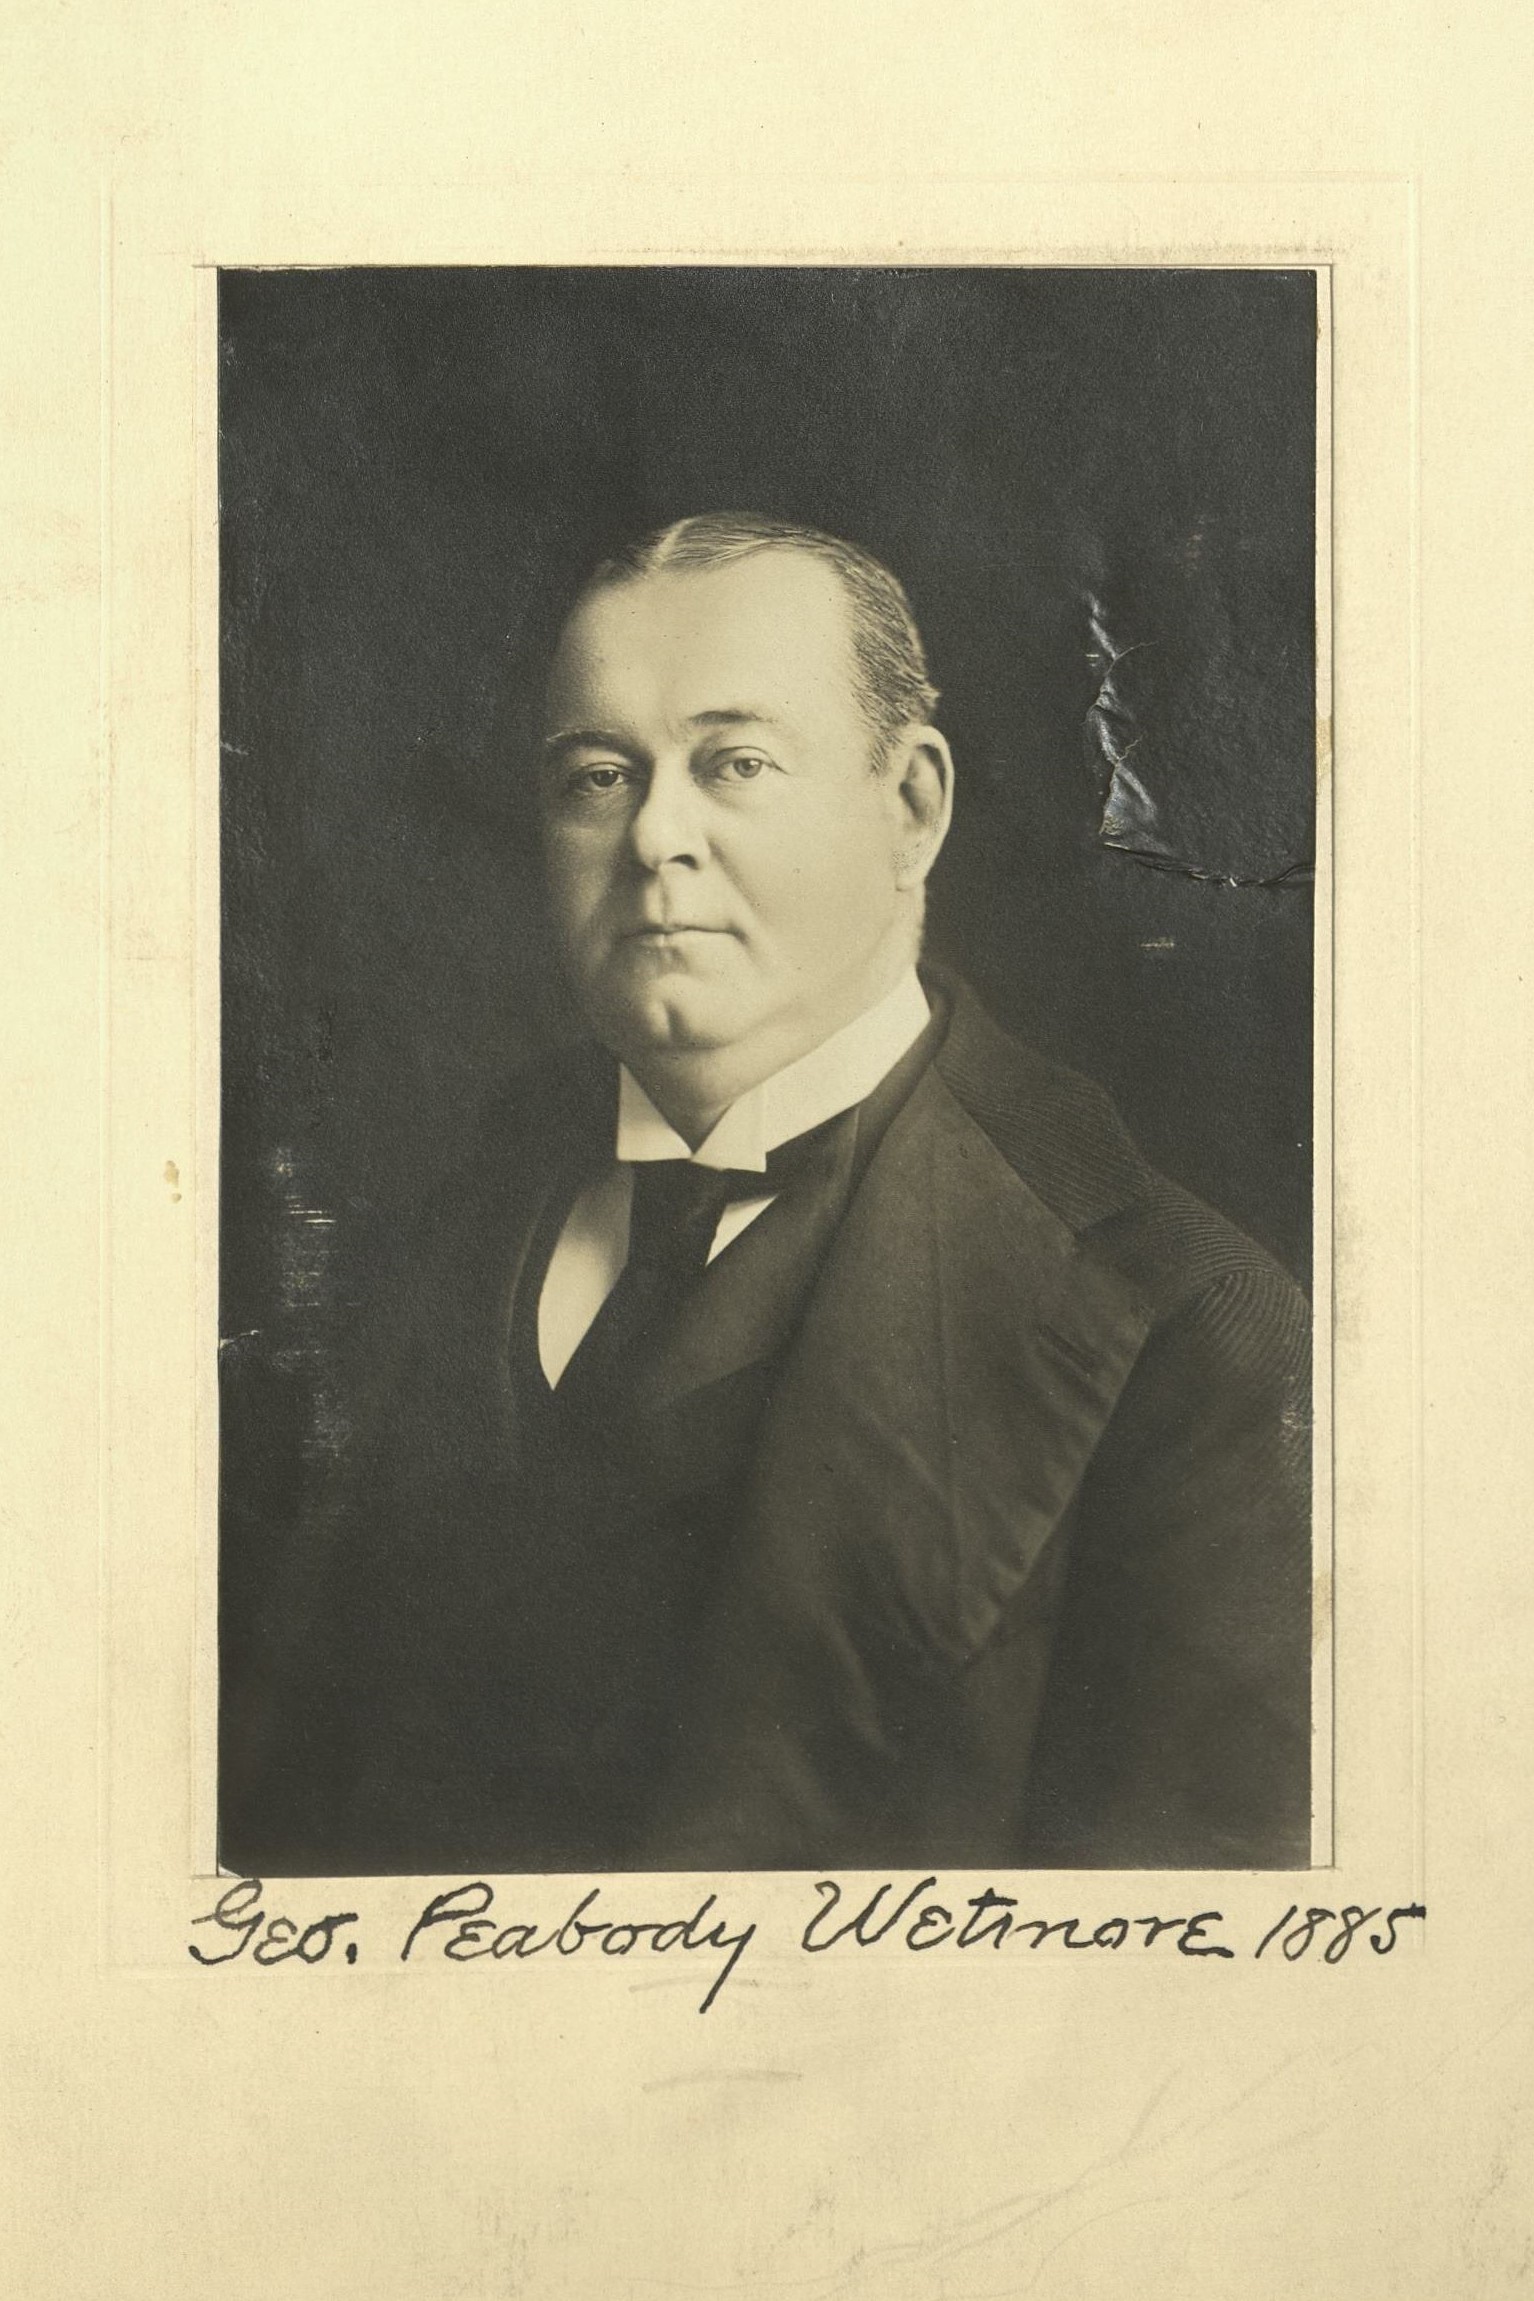 Member portrait of George Peabody Wetmore